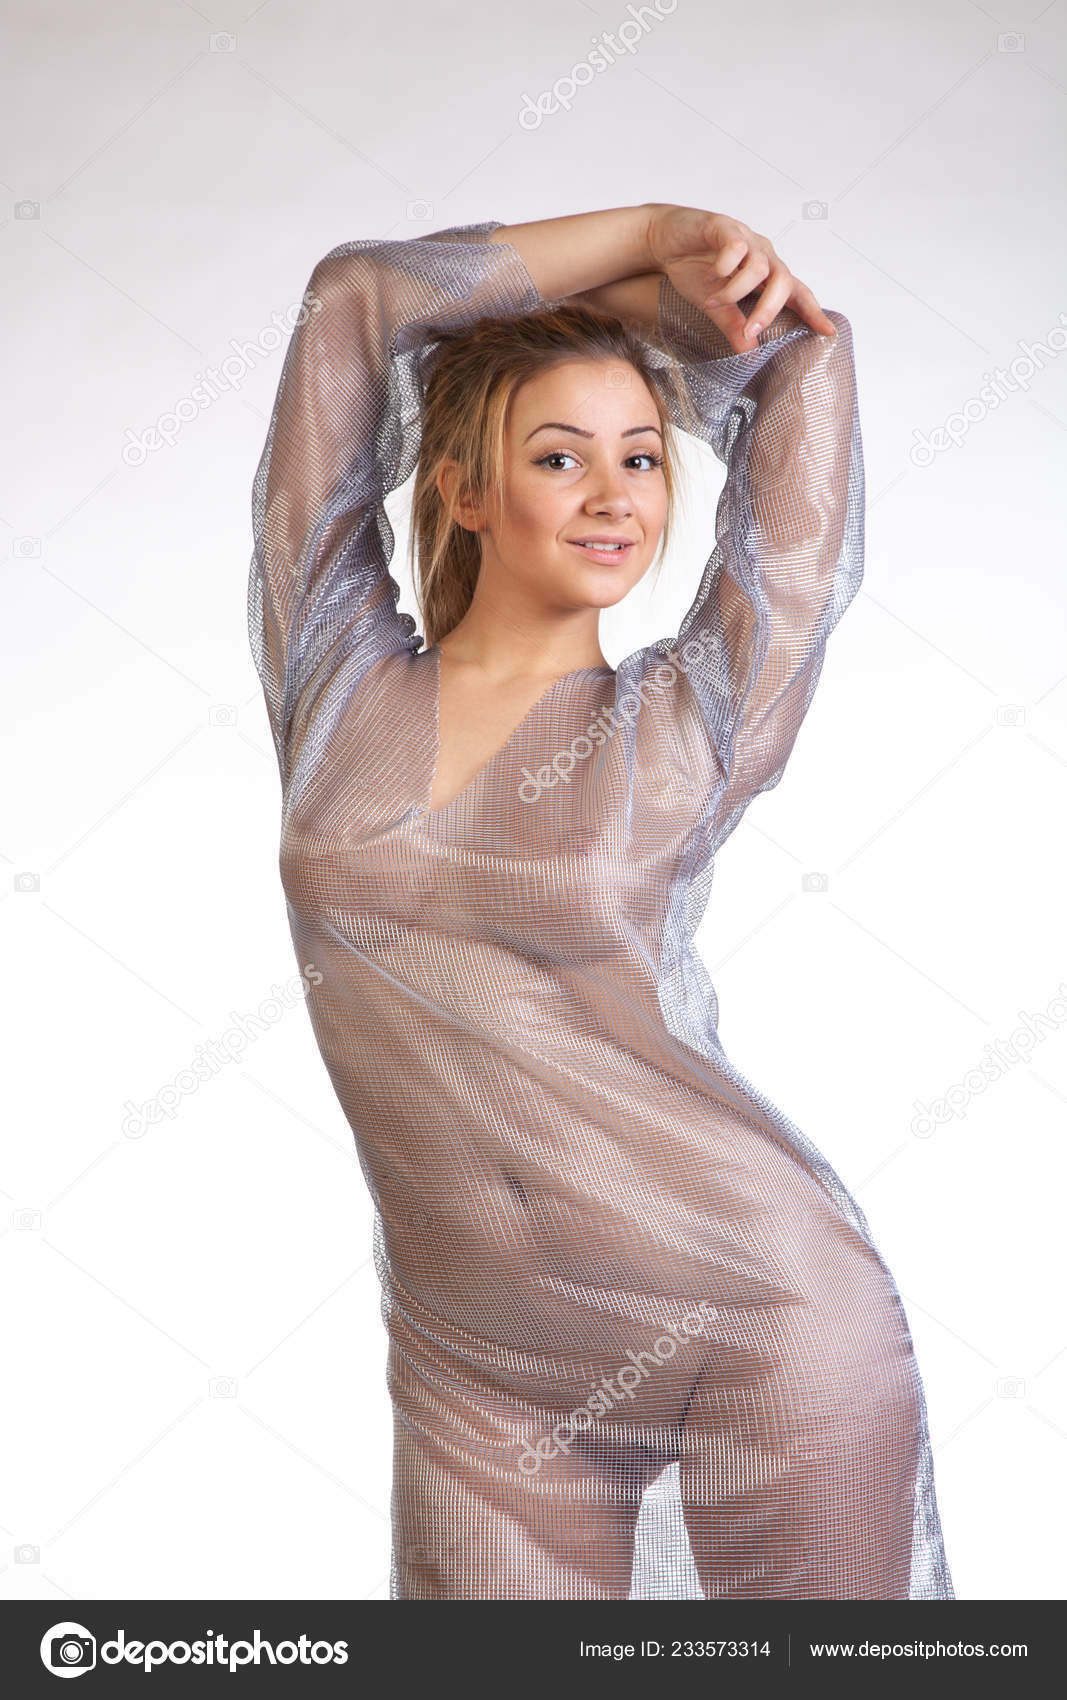 https://st4n.depositphotos.com/10086424/23357/i/1600/depositphotos_233573314-stock-photo-young-beautiful-girl-posing-nude.jpg